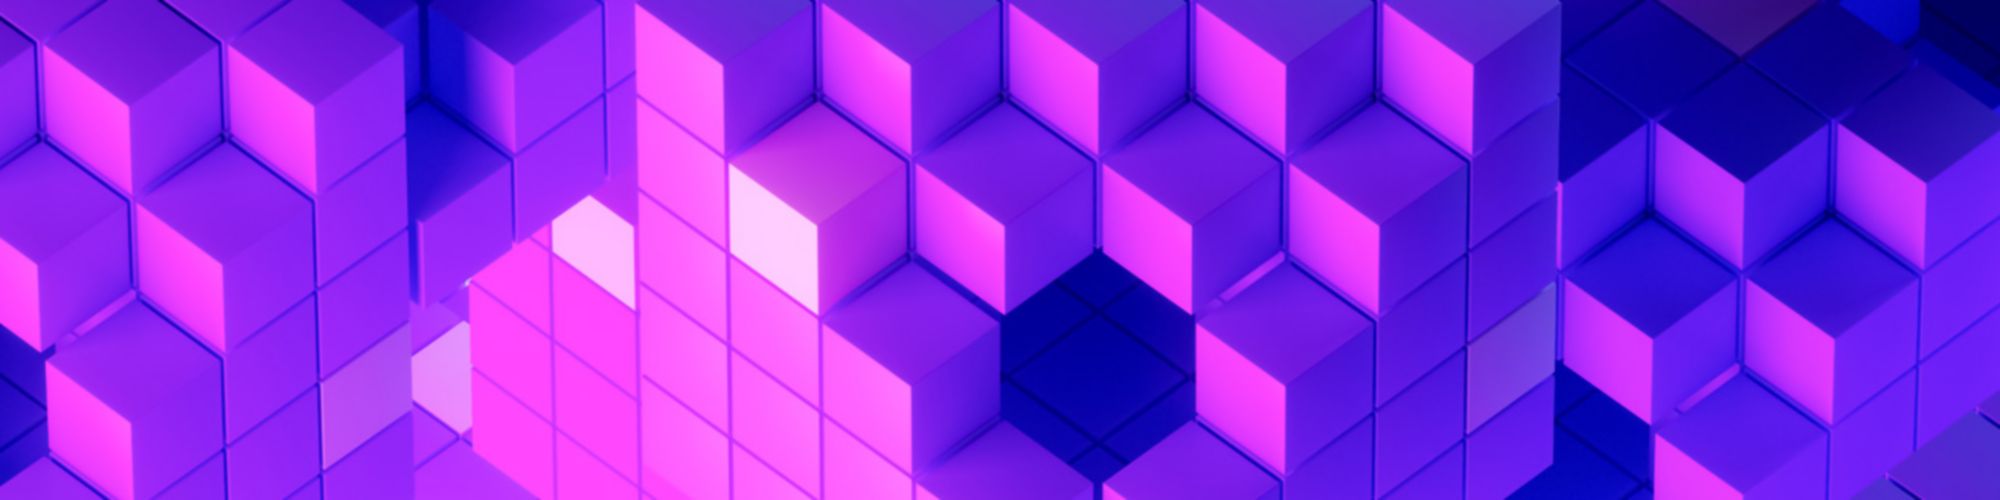 purple 3d blocks